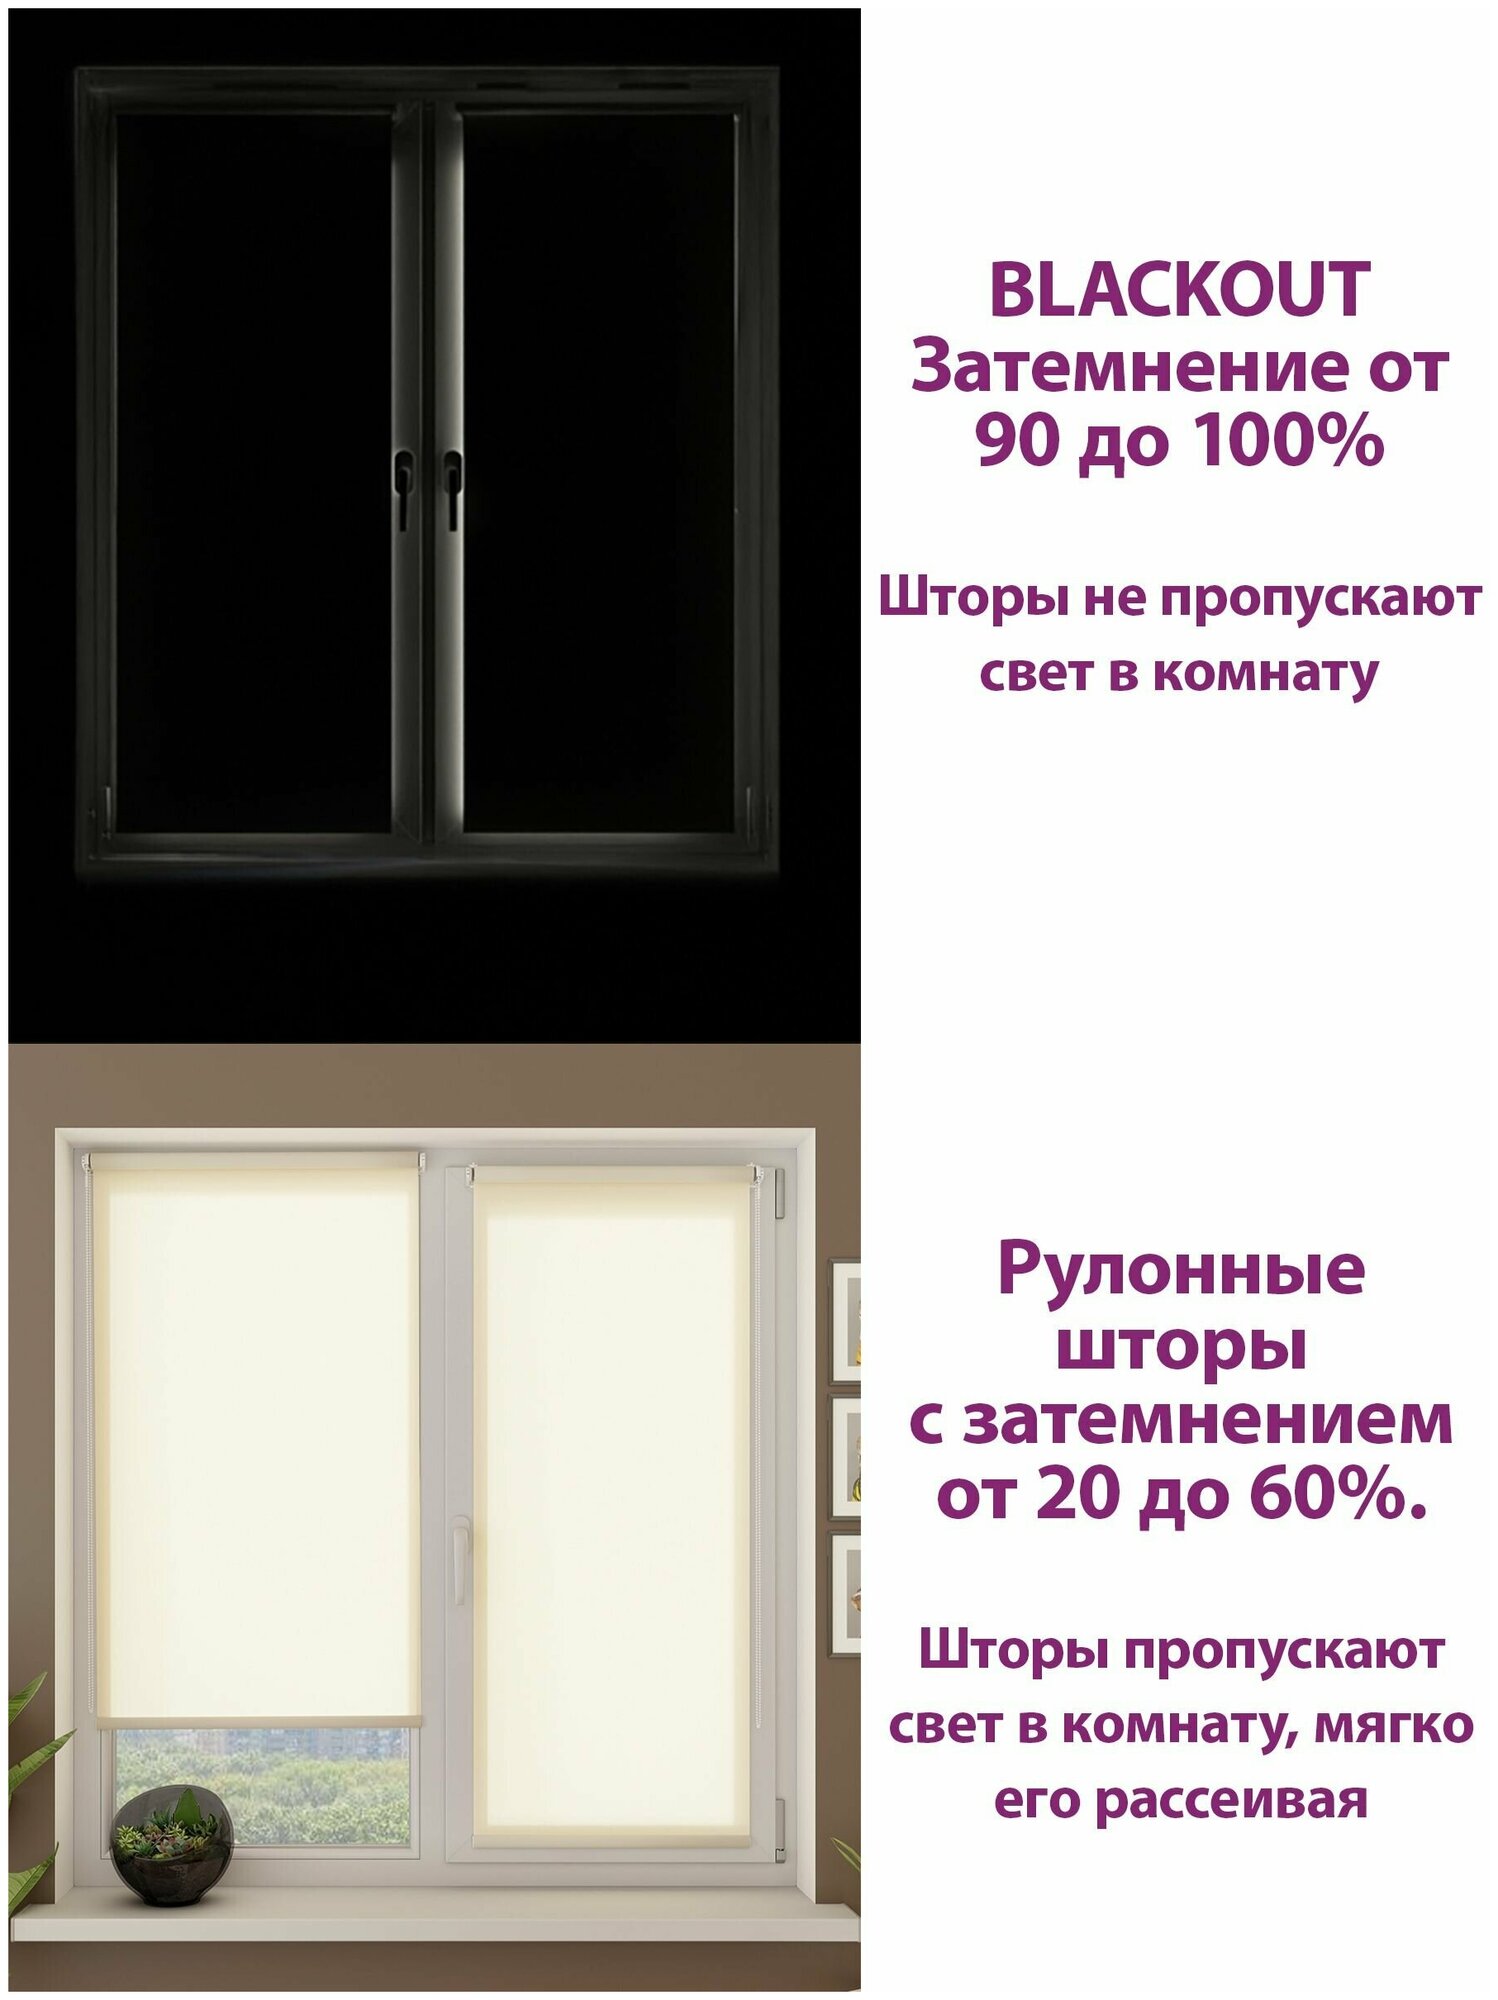 Рулонные шторы PIKAMO светонепроницаемая 57*170 см, цвет: бежевый, Блэкаут / Blackout рулонные шторы для комнаты для кухни для спальни - фотография № 15